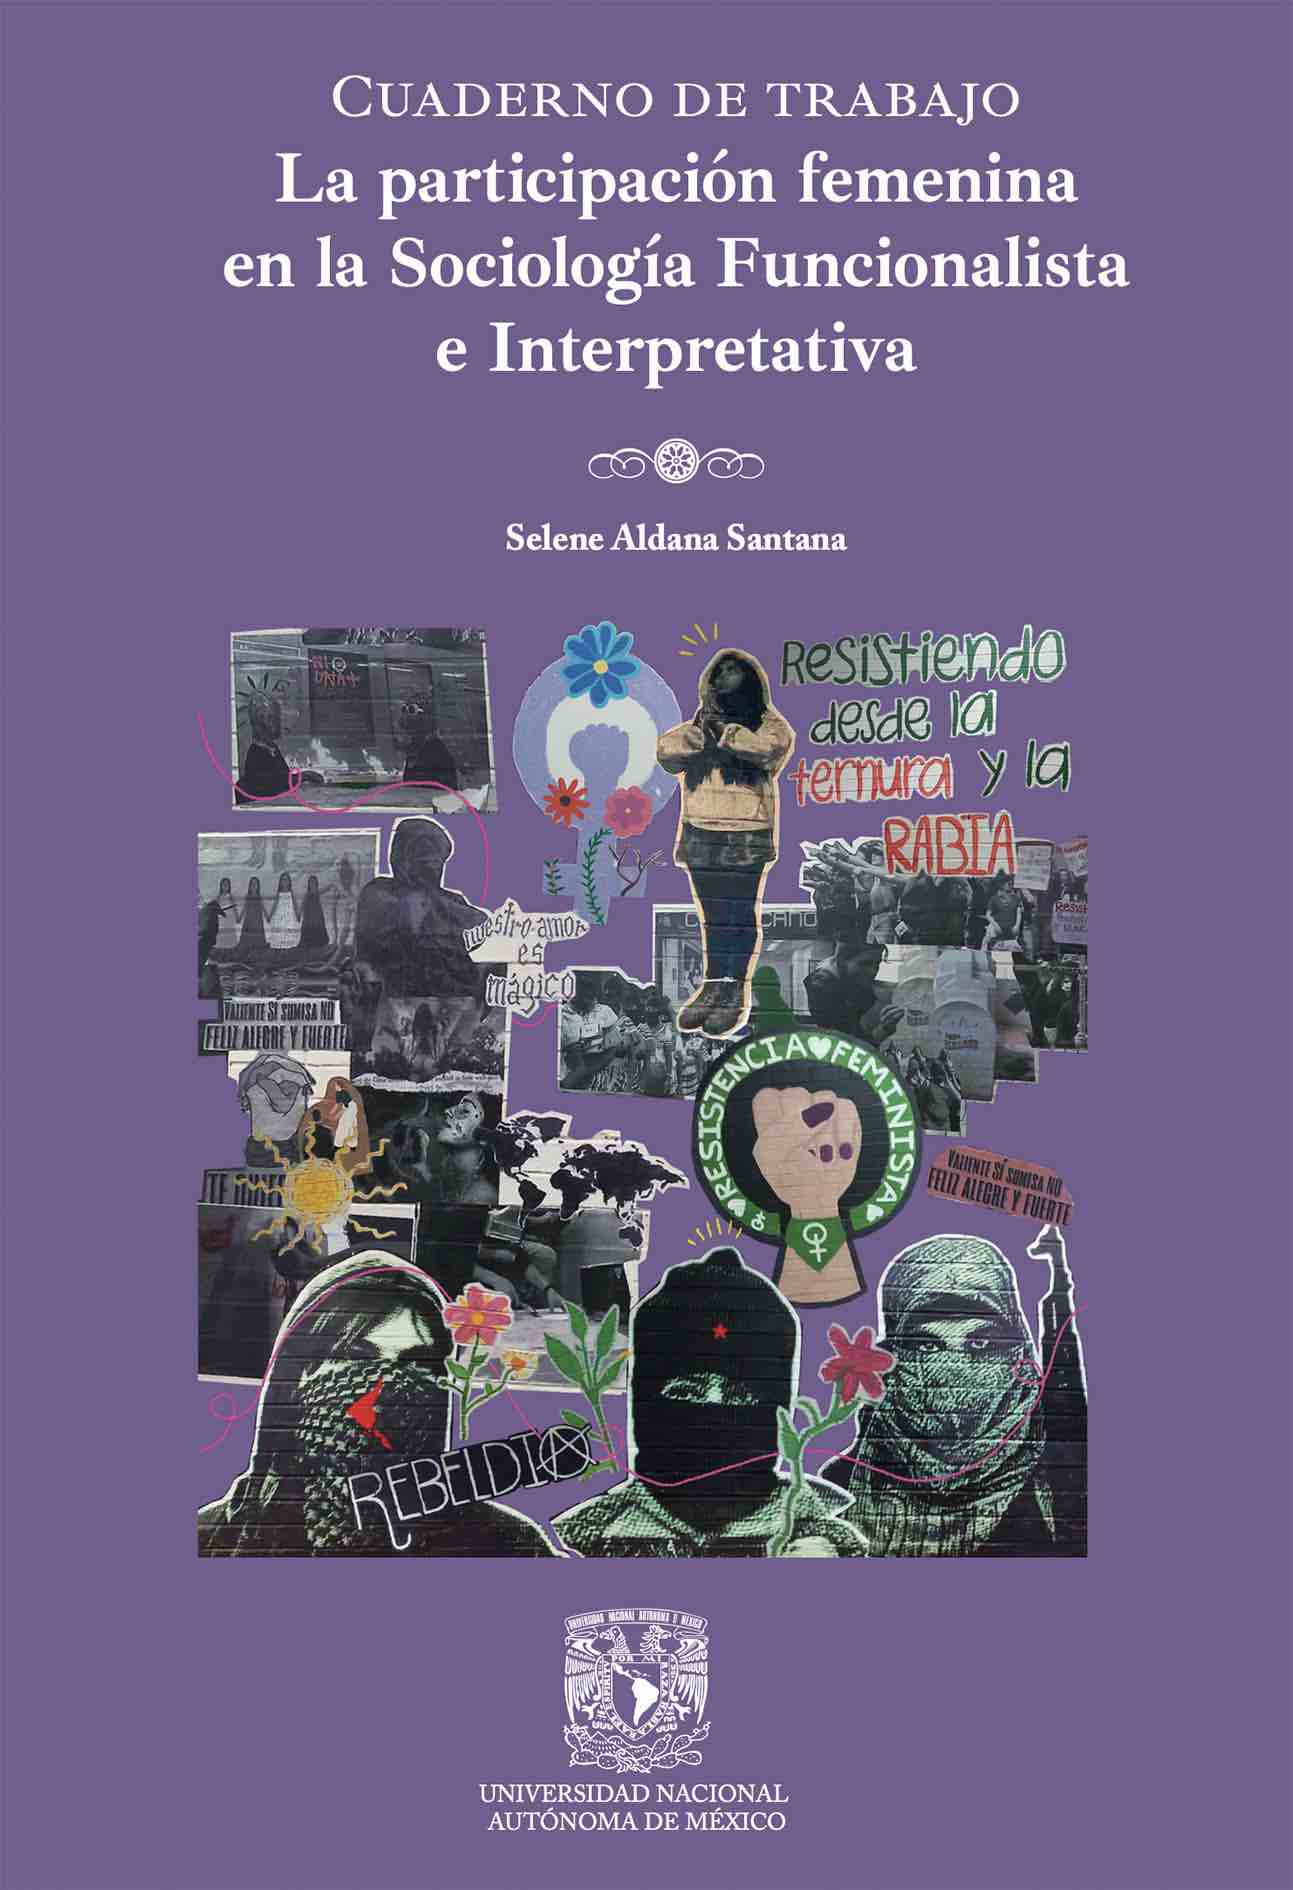 La participación femenina en la Sociología Funcionalista e Interpretativa. Cuaderno de trabajo 